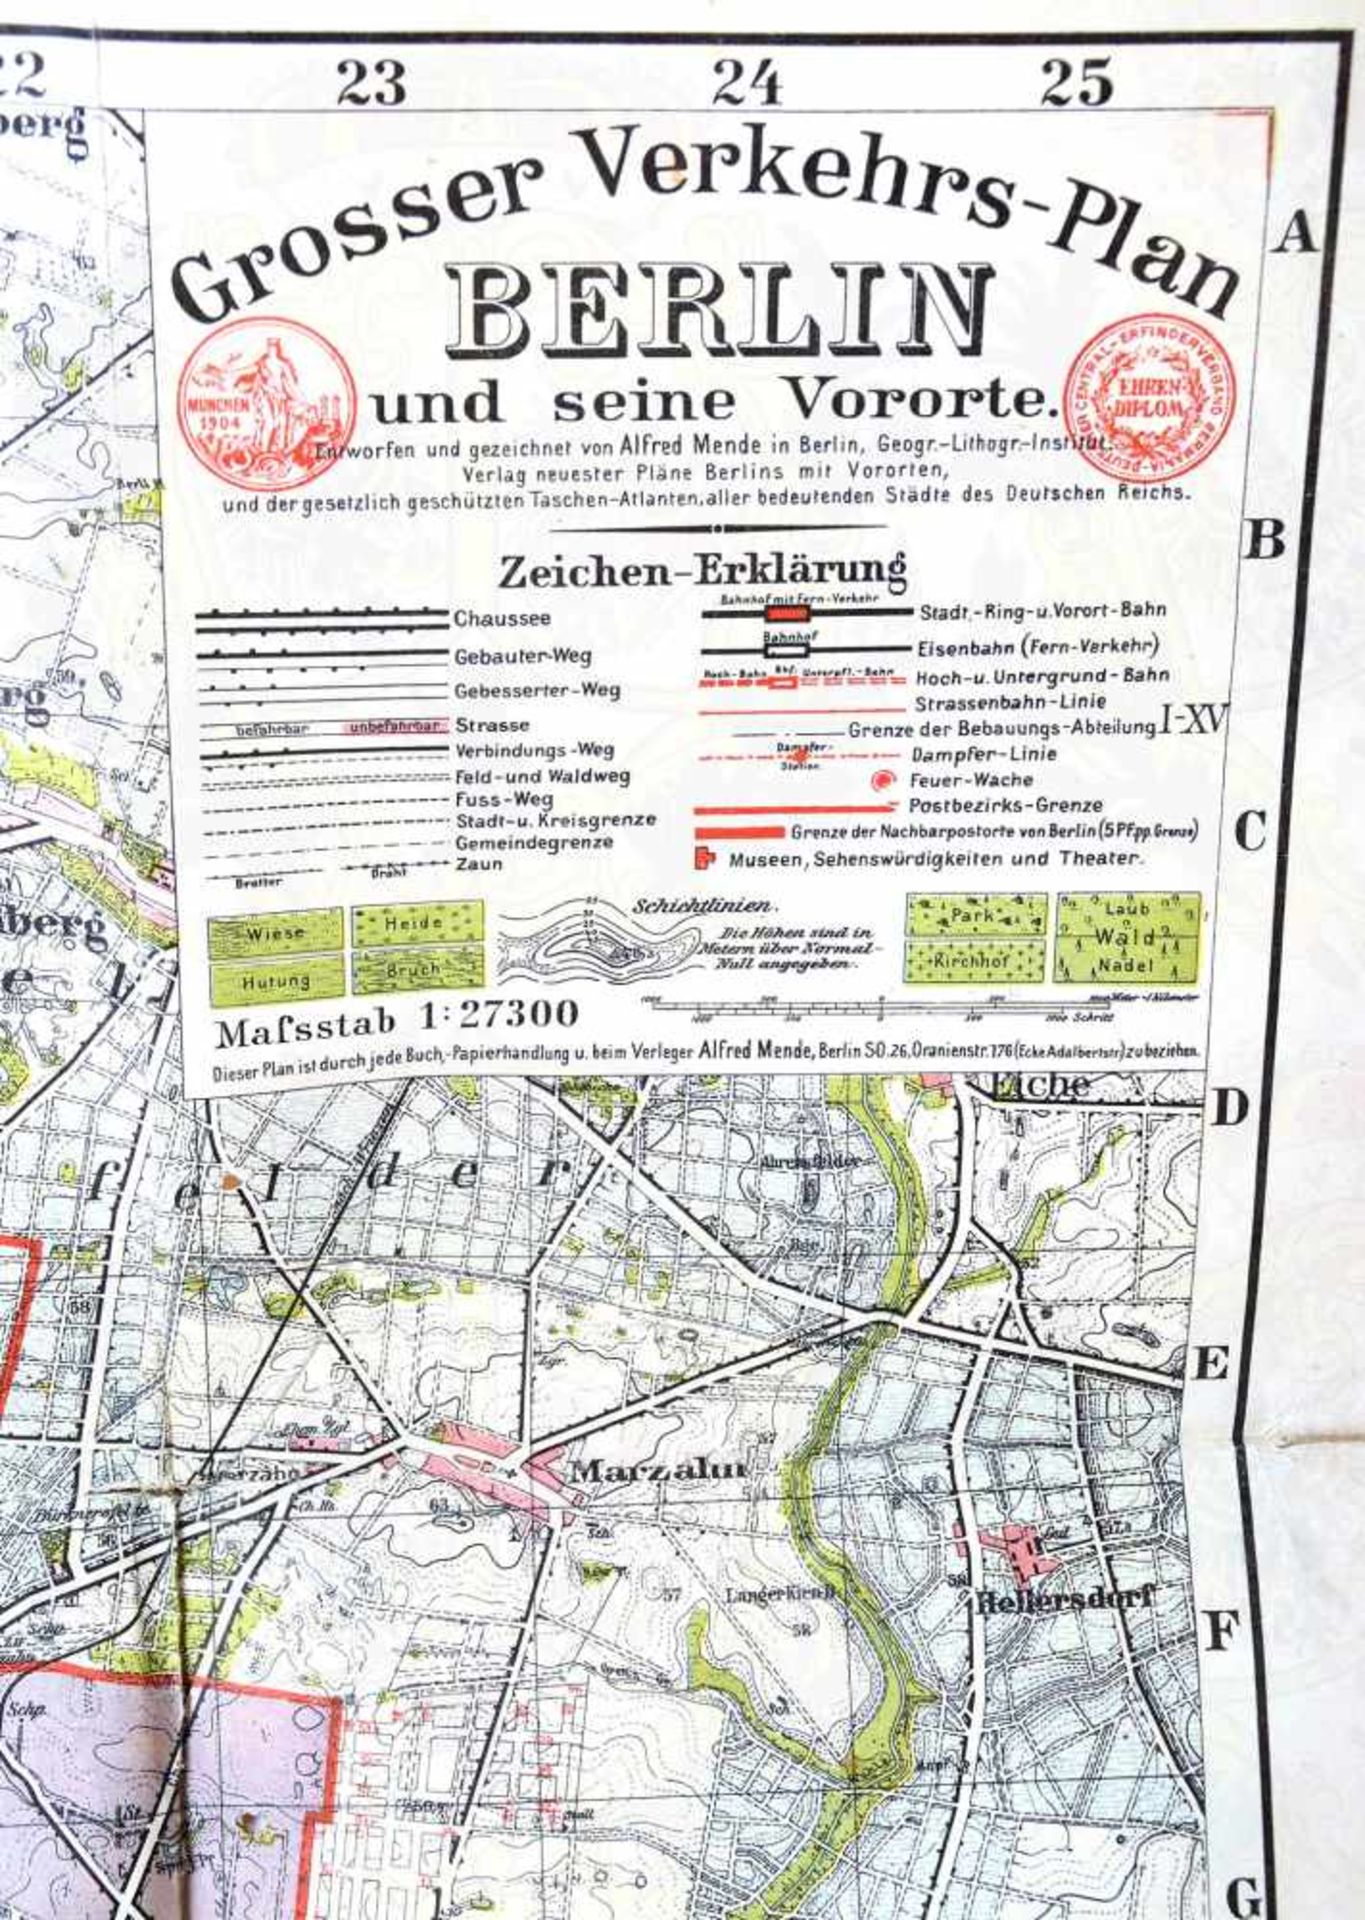 MENDE´S GROSSER VERKEHRSPLAN BERLIN UND SEINE VORORTE, Geograph.-Lithogr. Institut Alfred Mende, - Bild 3 aus 3